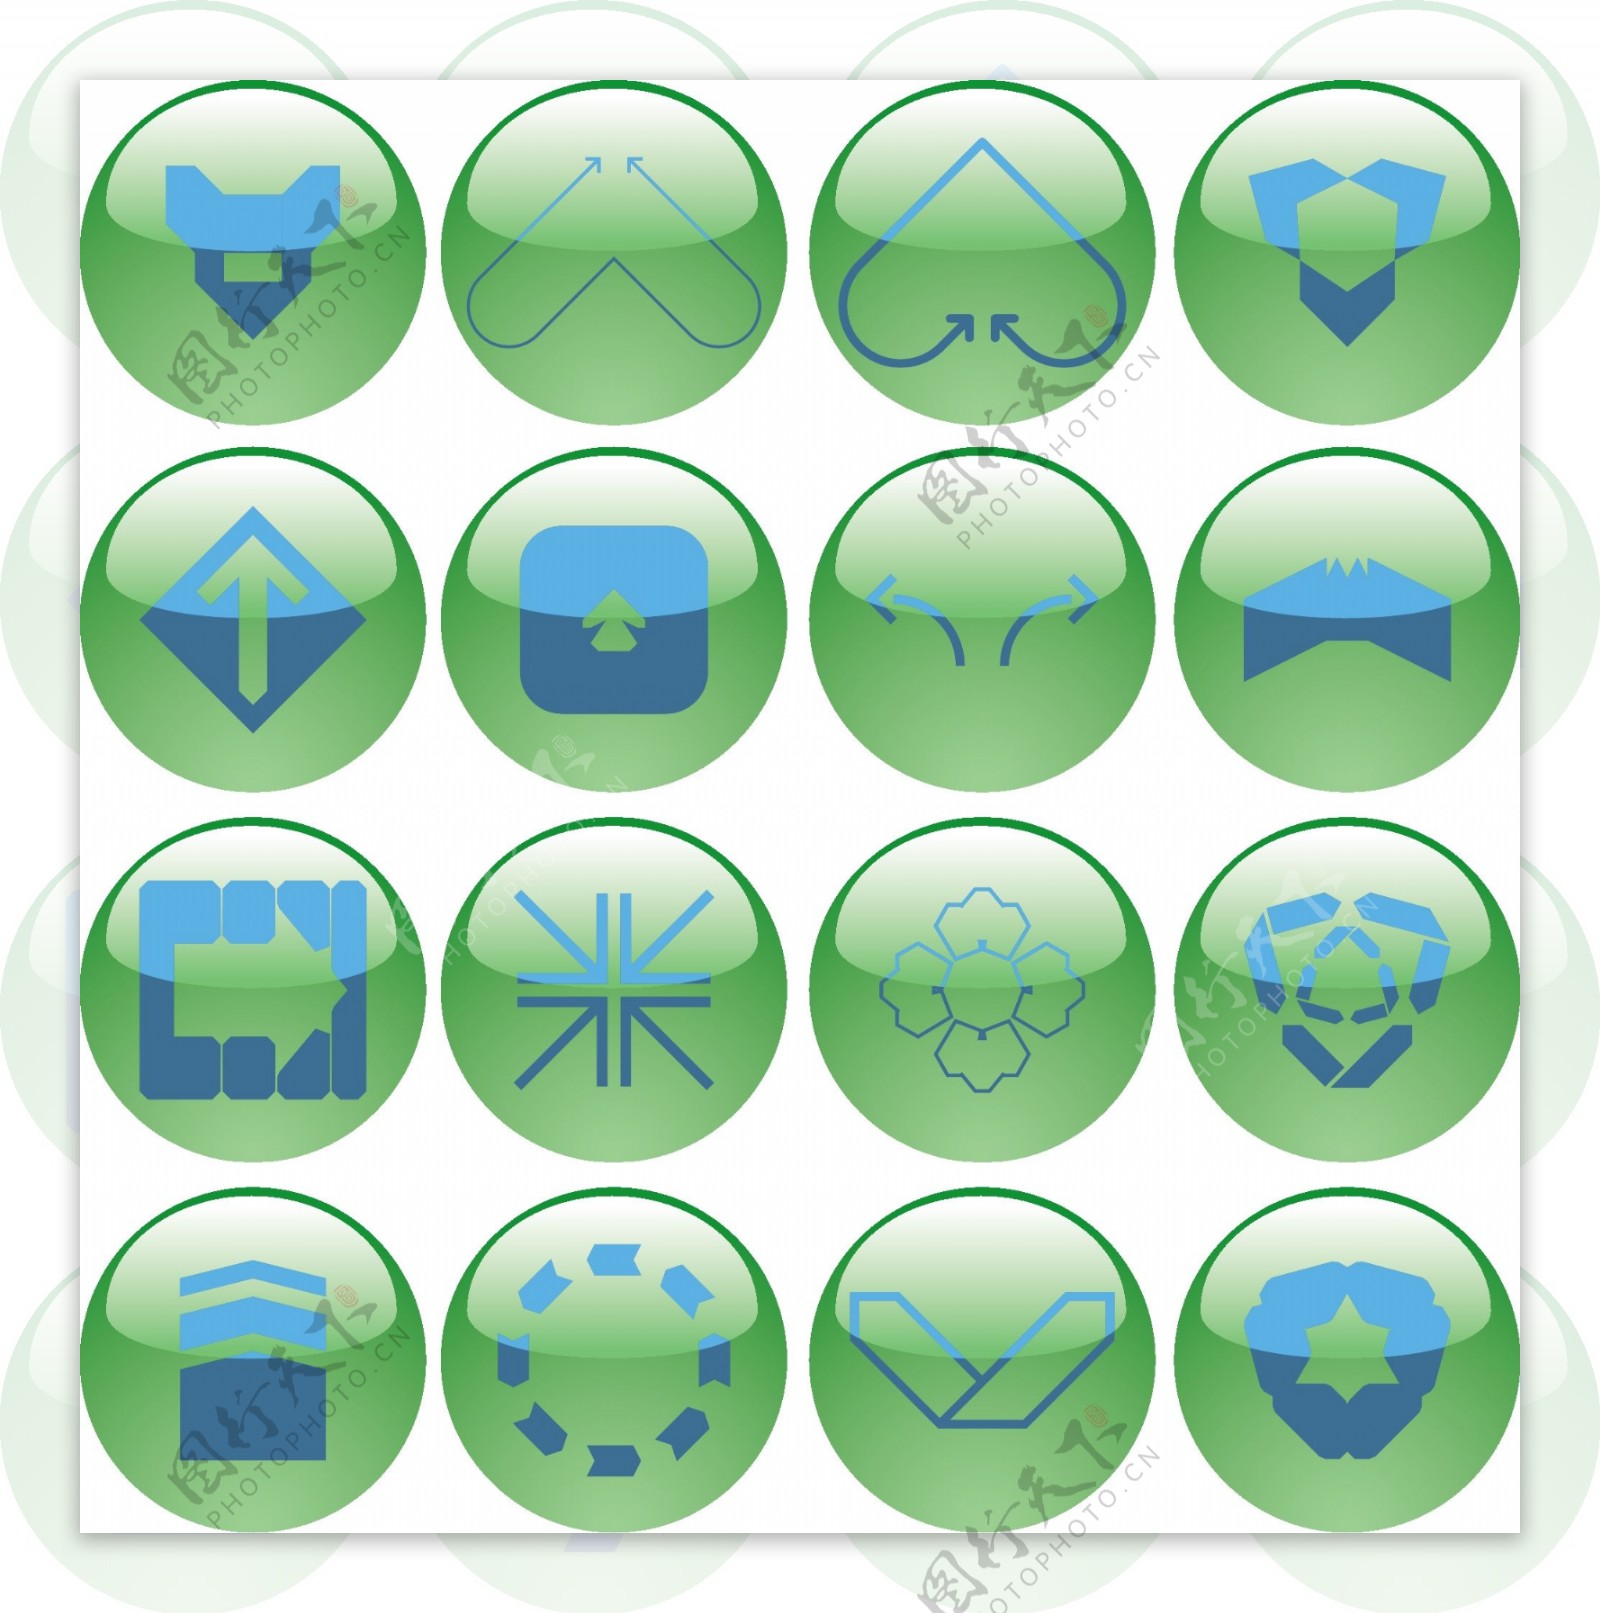 各种符号的绿色水晶圆球按钮图标矢量素材